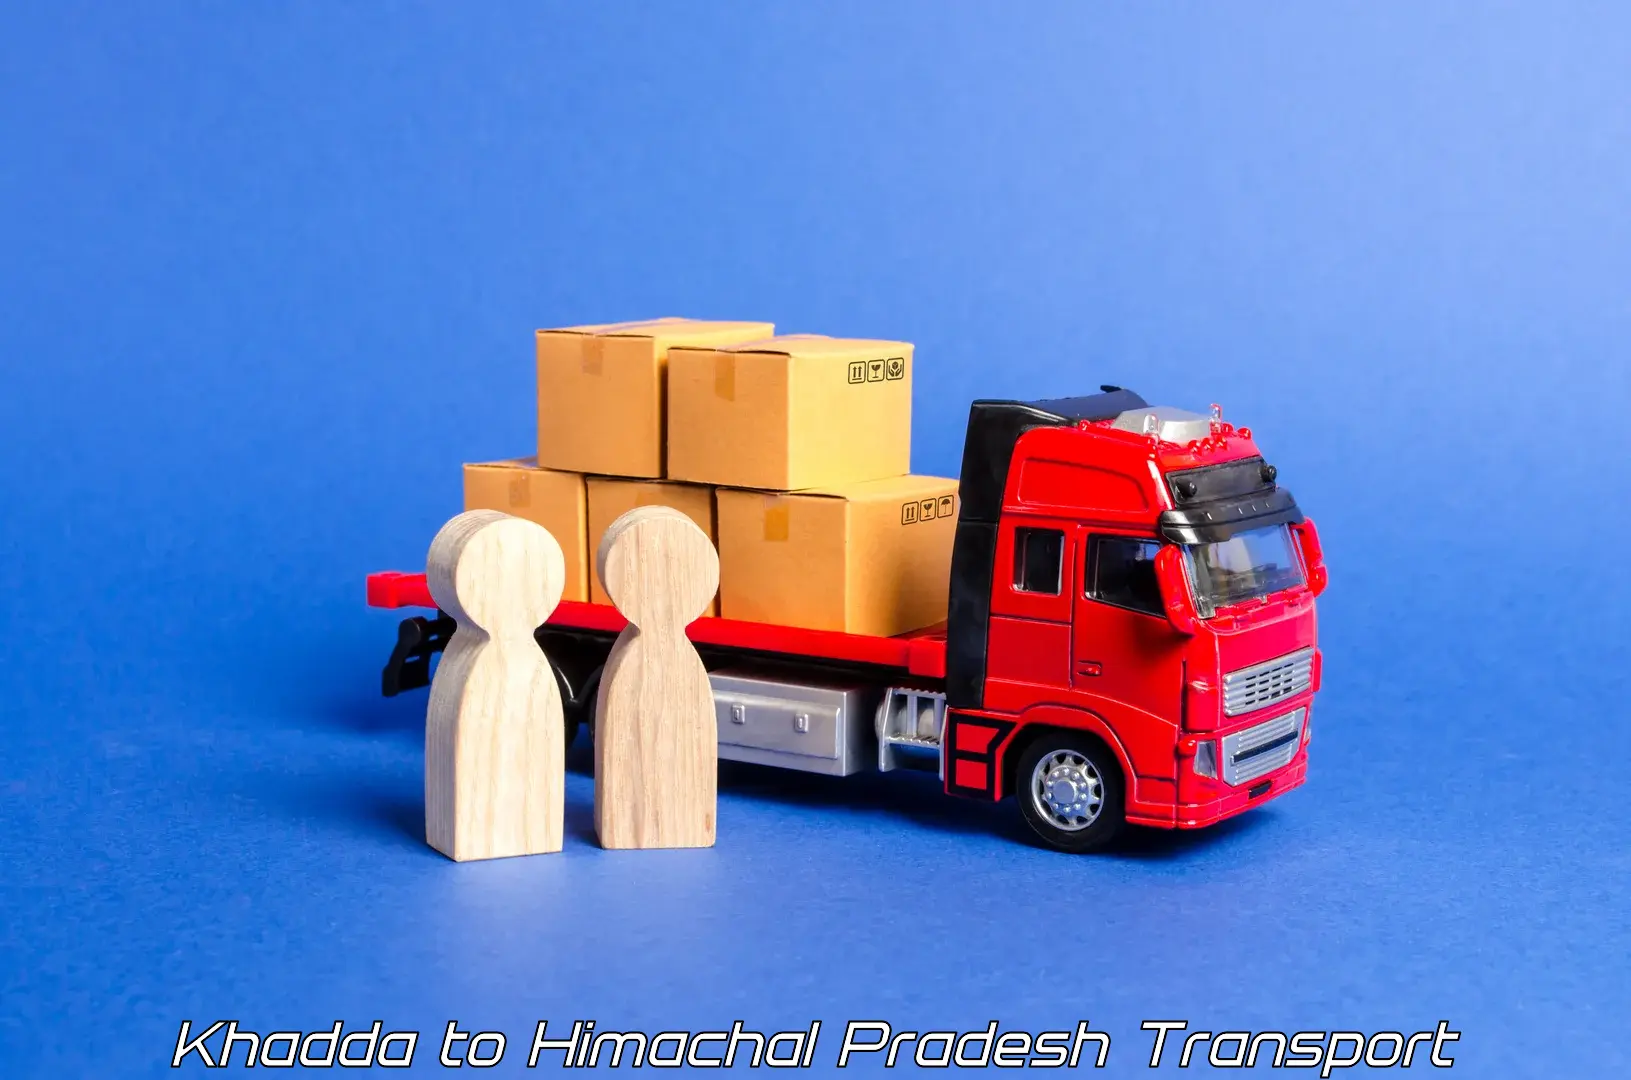 Cargo transport services Khadda to Una Himachal Pradesh